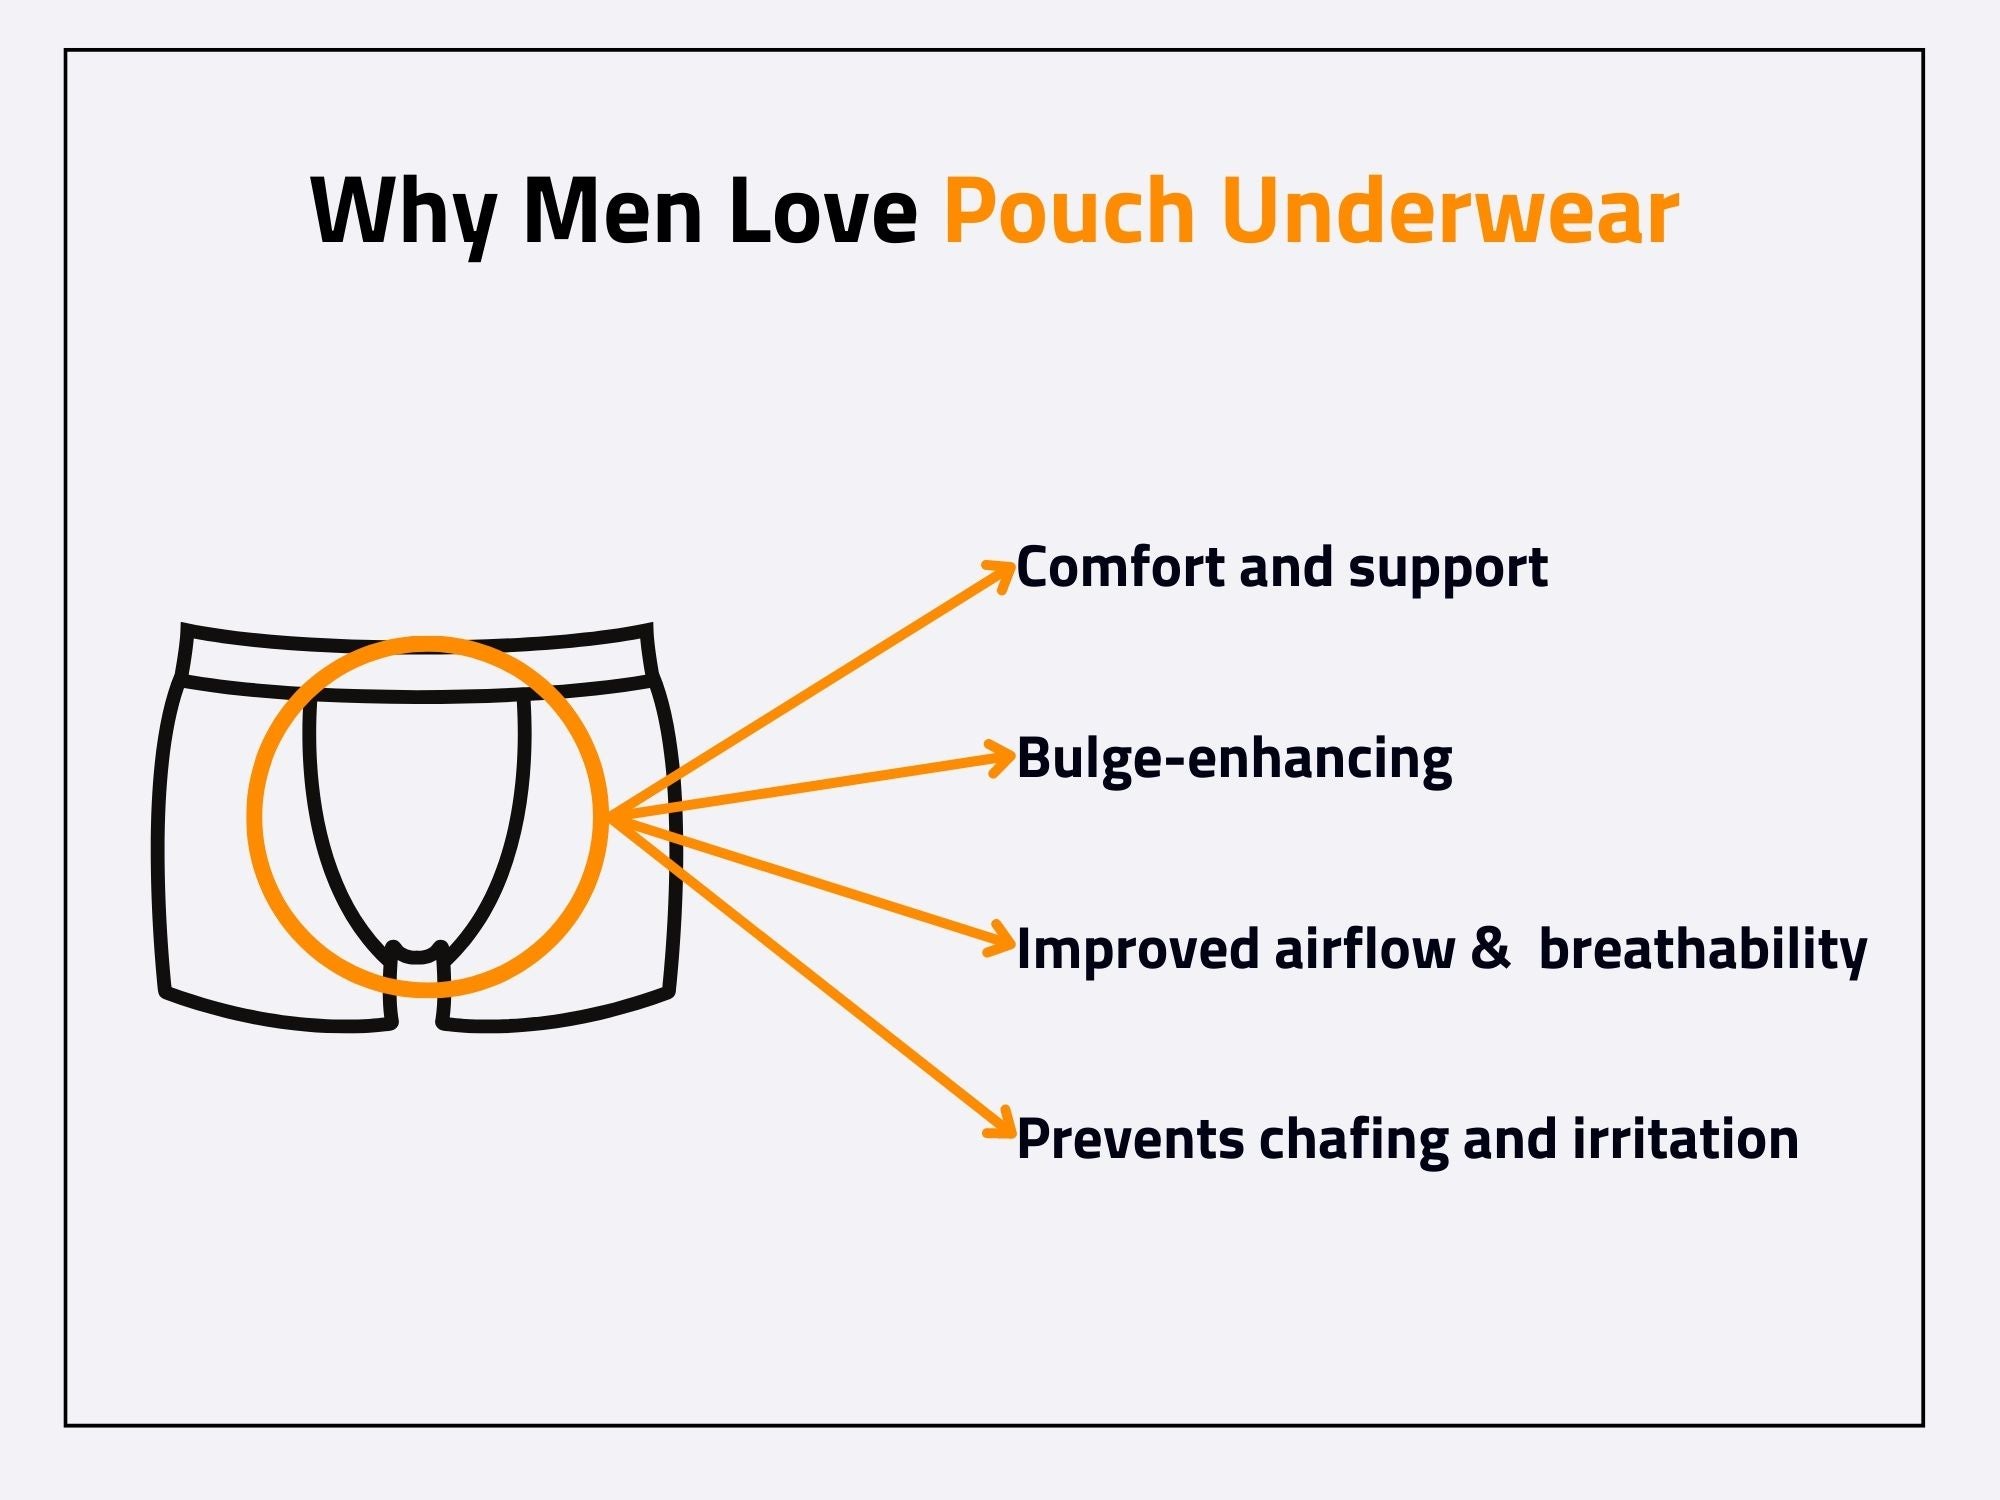 Should men wear pouch underwear?